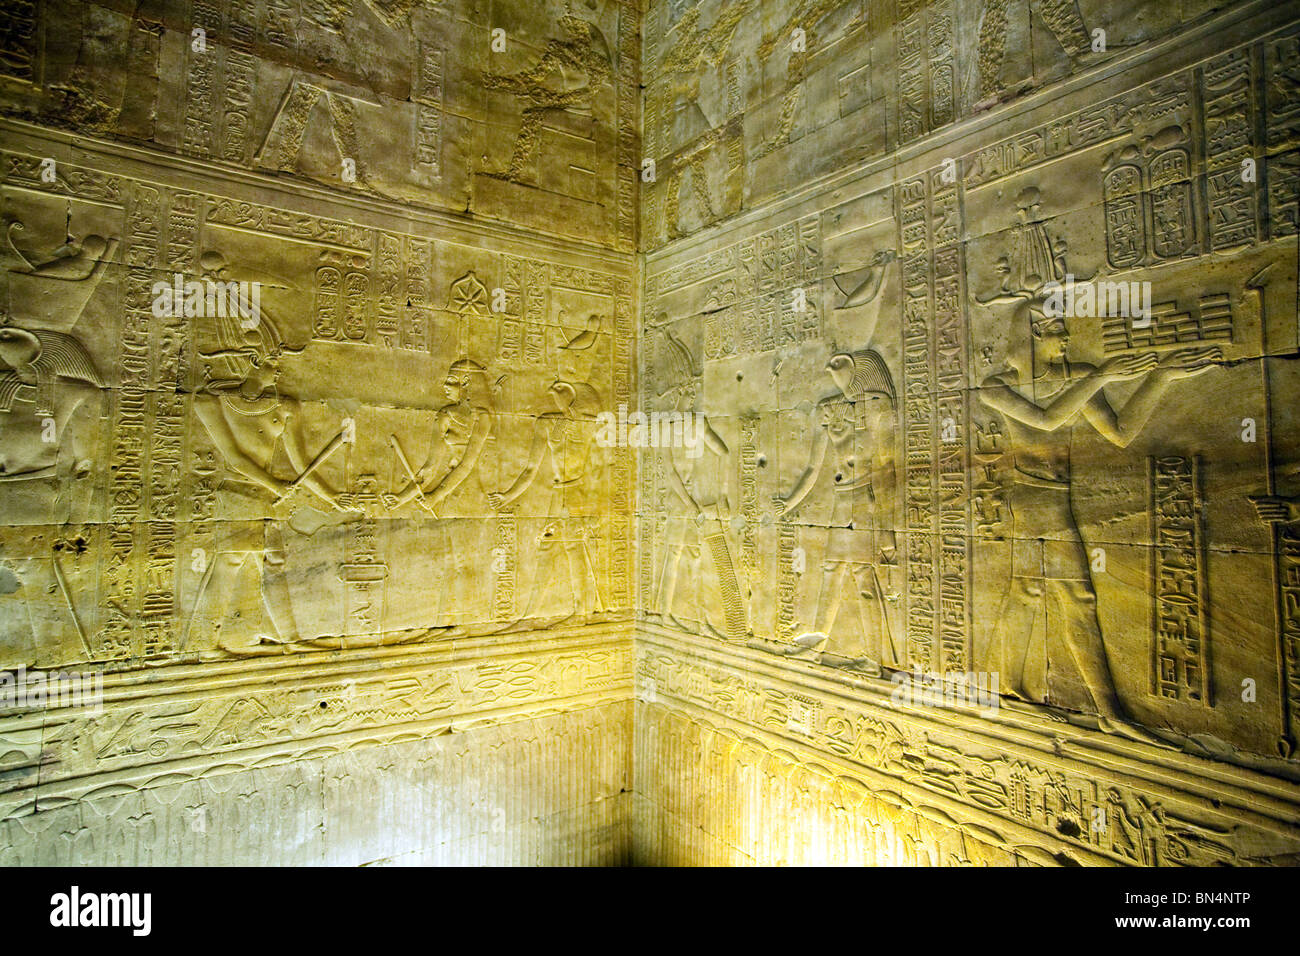 Hiéroglyphes et bas-relief sculpté photos à temple d'Edfou, Egypte Banque D'Images